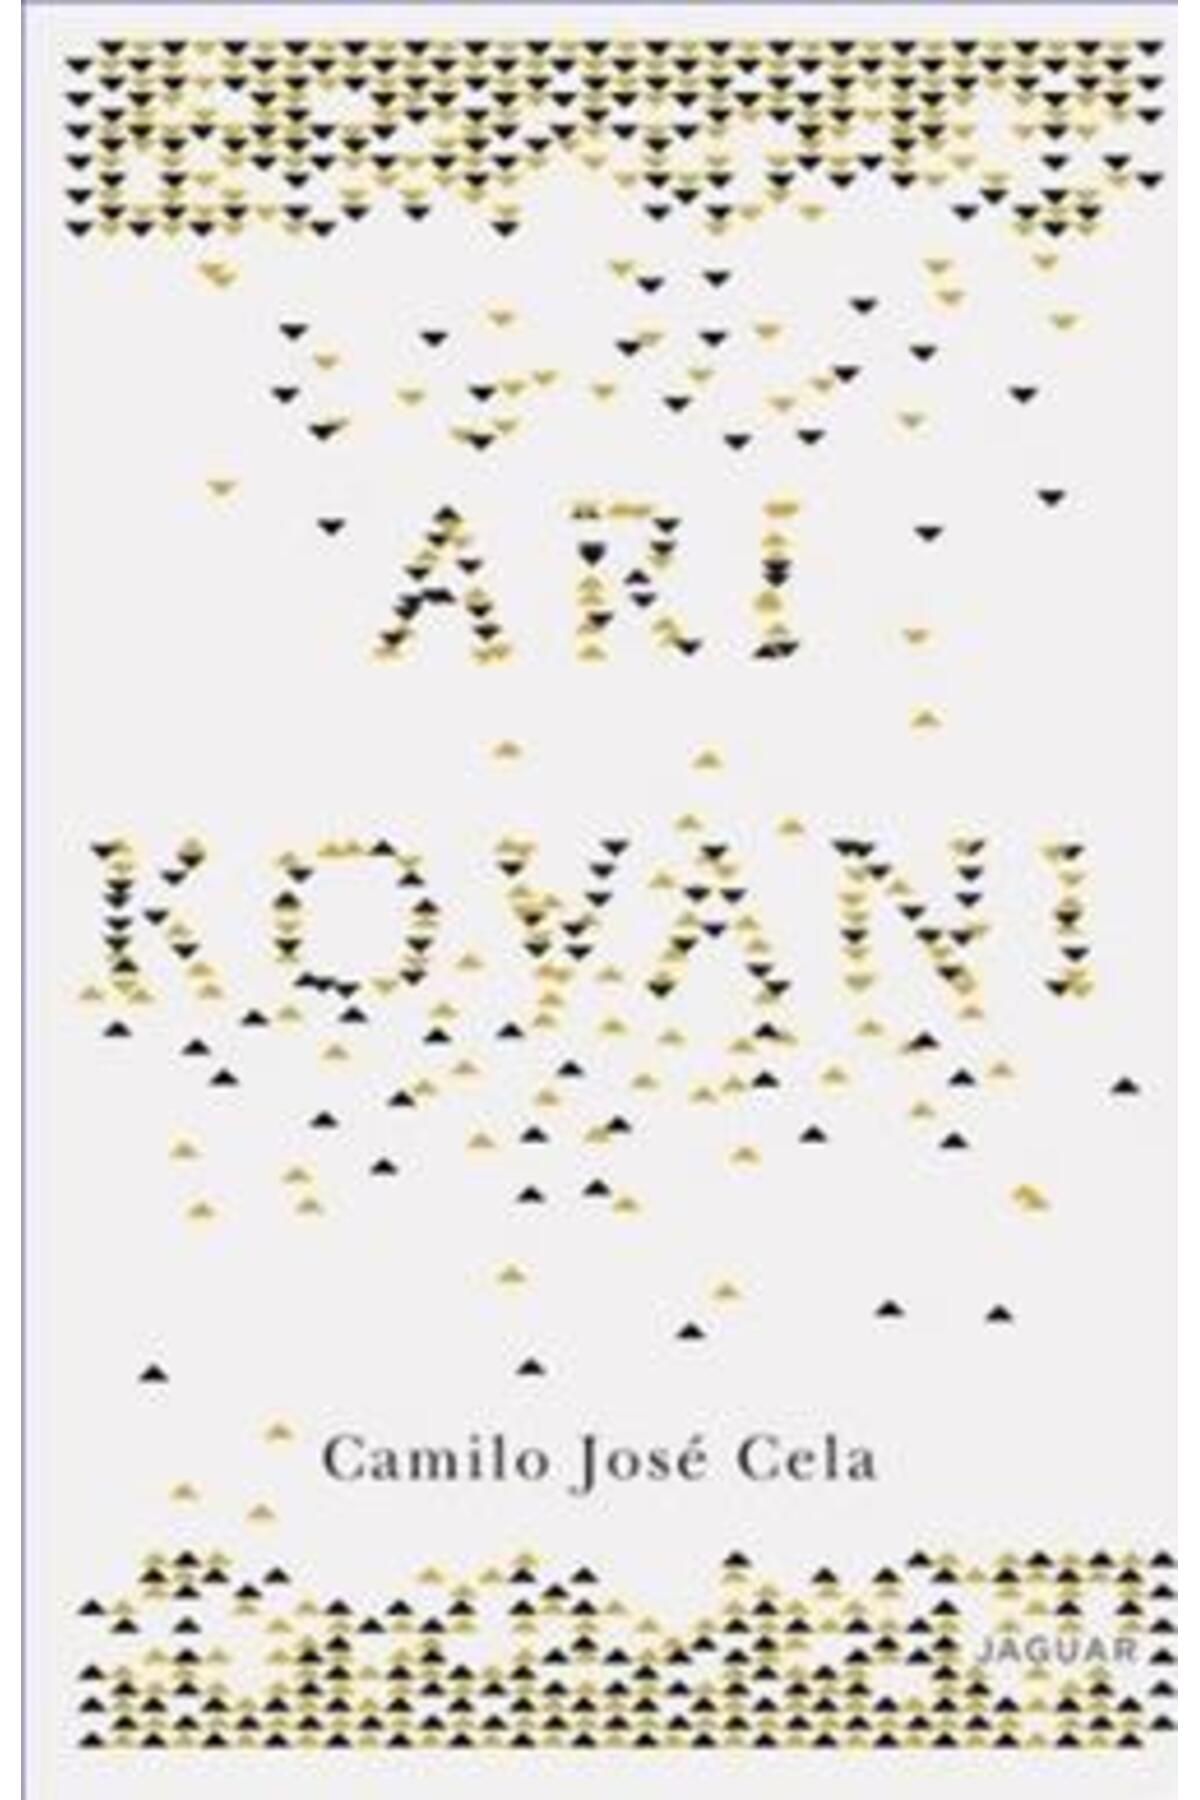 Jaguar Kitap Arı Kovanı kitabı - Camilo Jose Cela - Jaguar Kitap